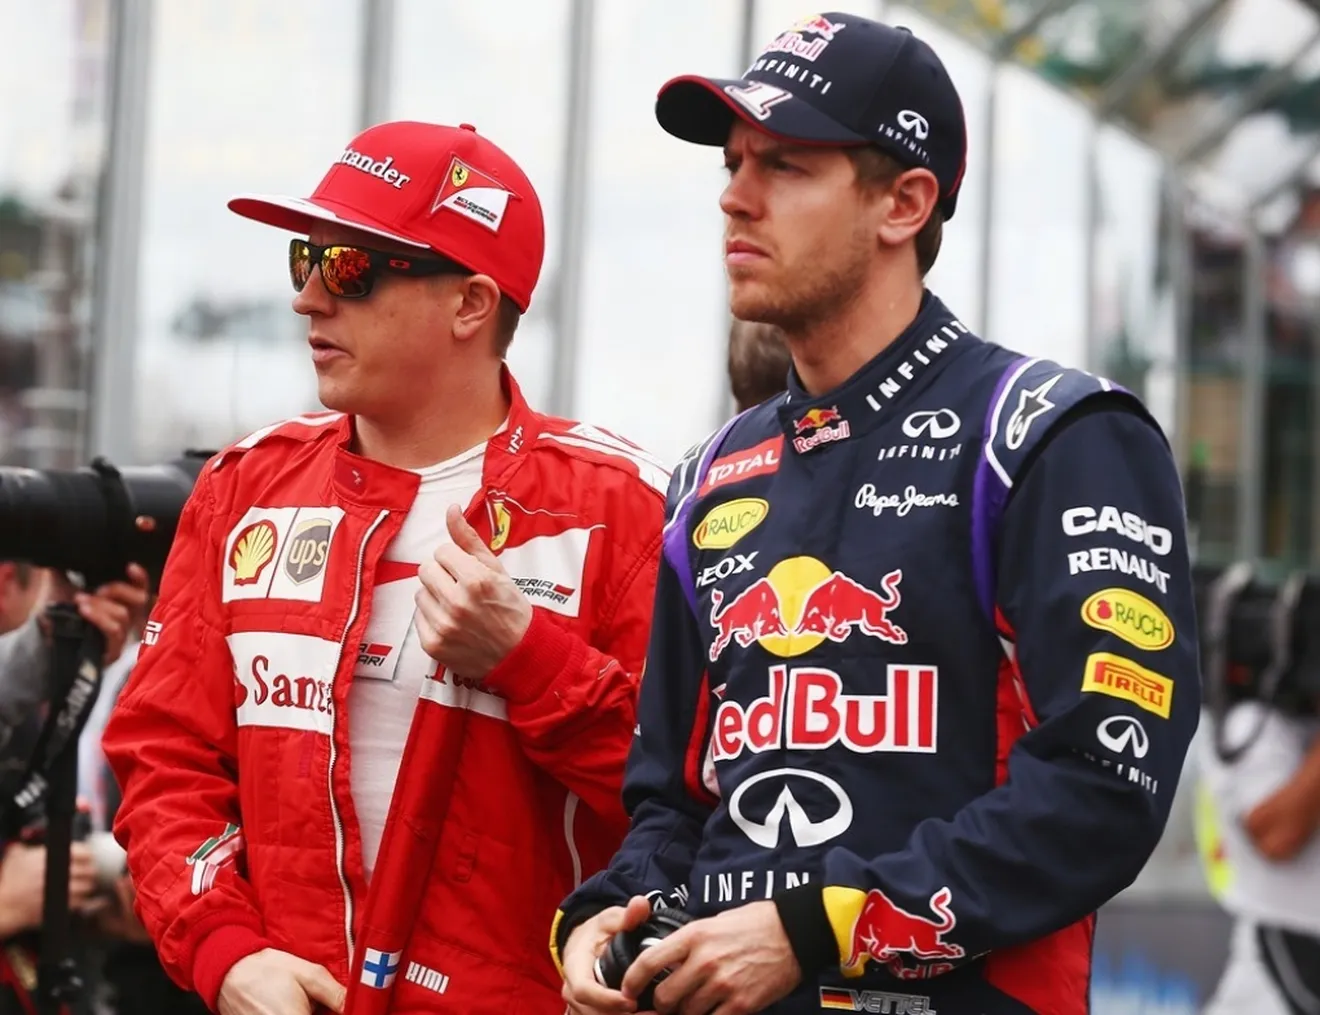 Los problemas de Vettel y Raikkonen, ''solo sutiles detalles'', según Webber